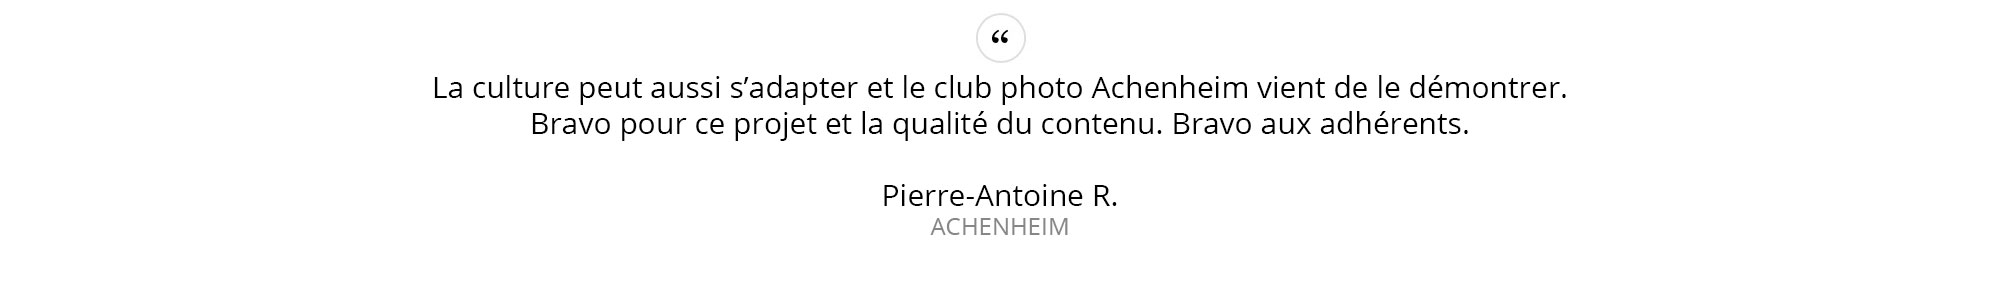 Pierre-Antoine-R.---ACHENHEIM